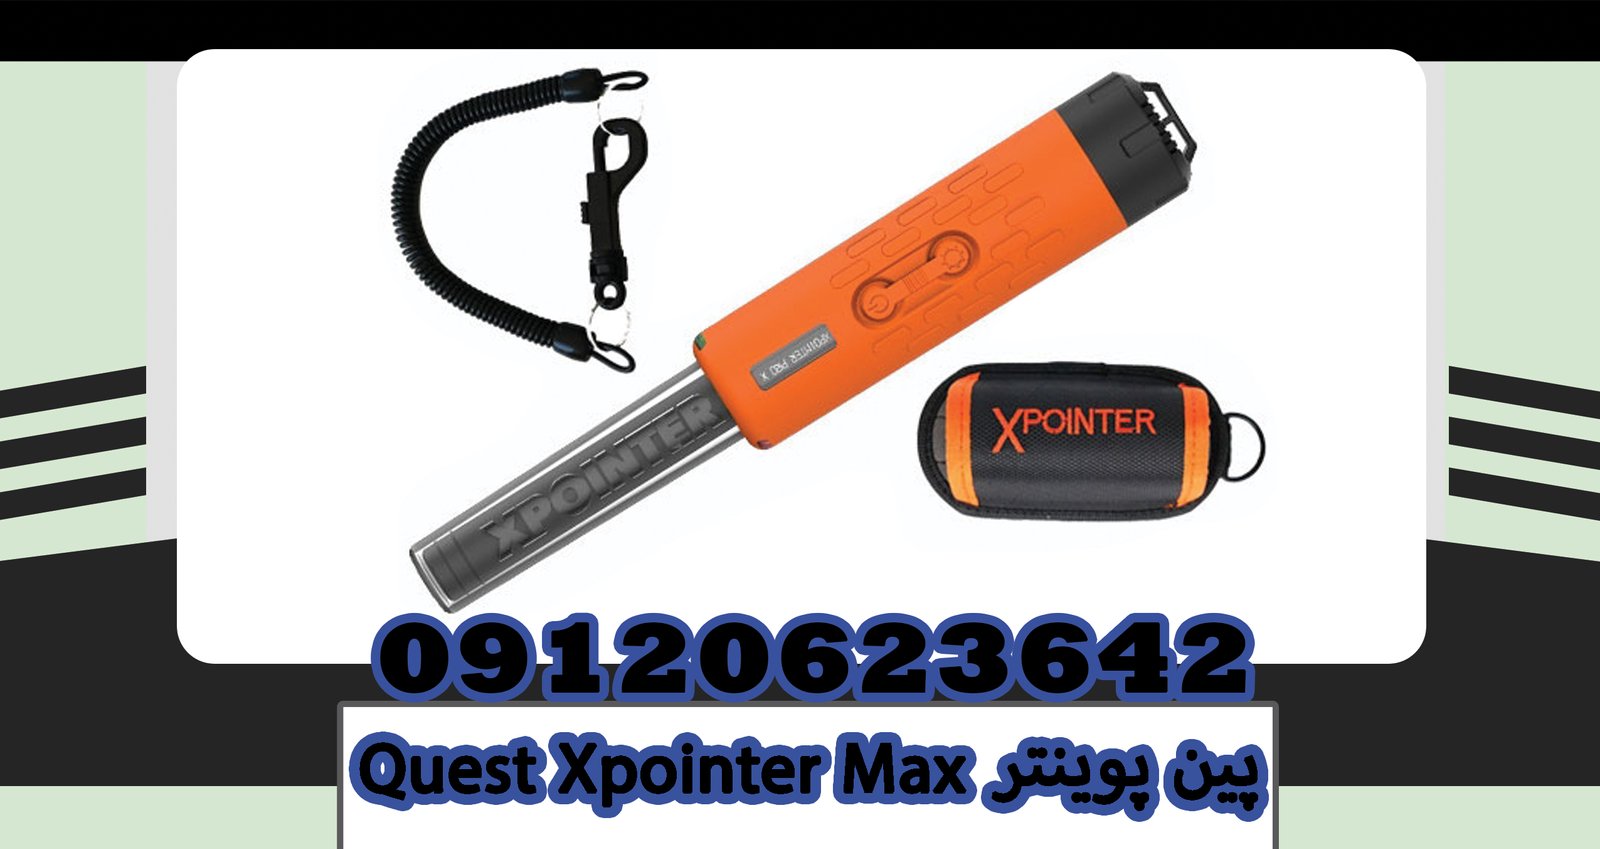 Quest Xpointer Max